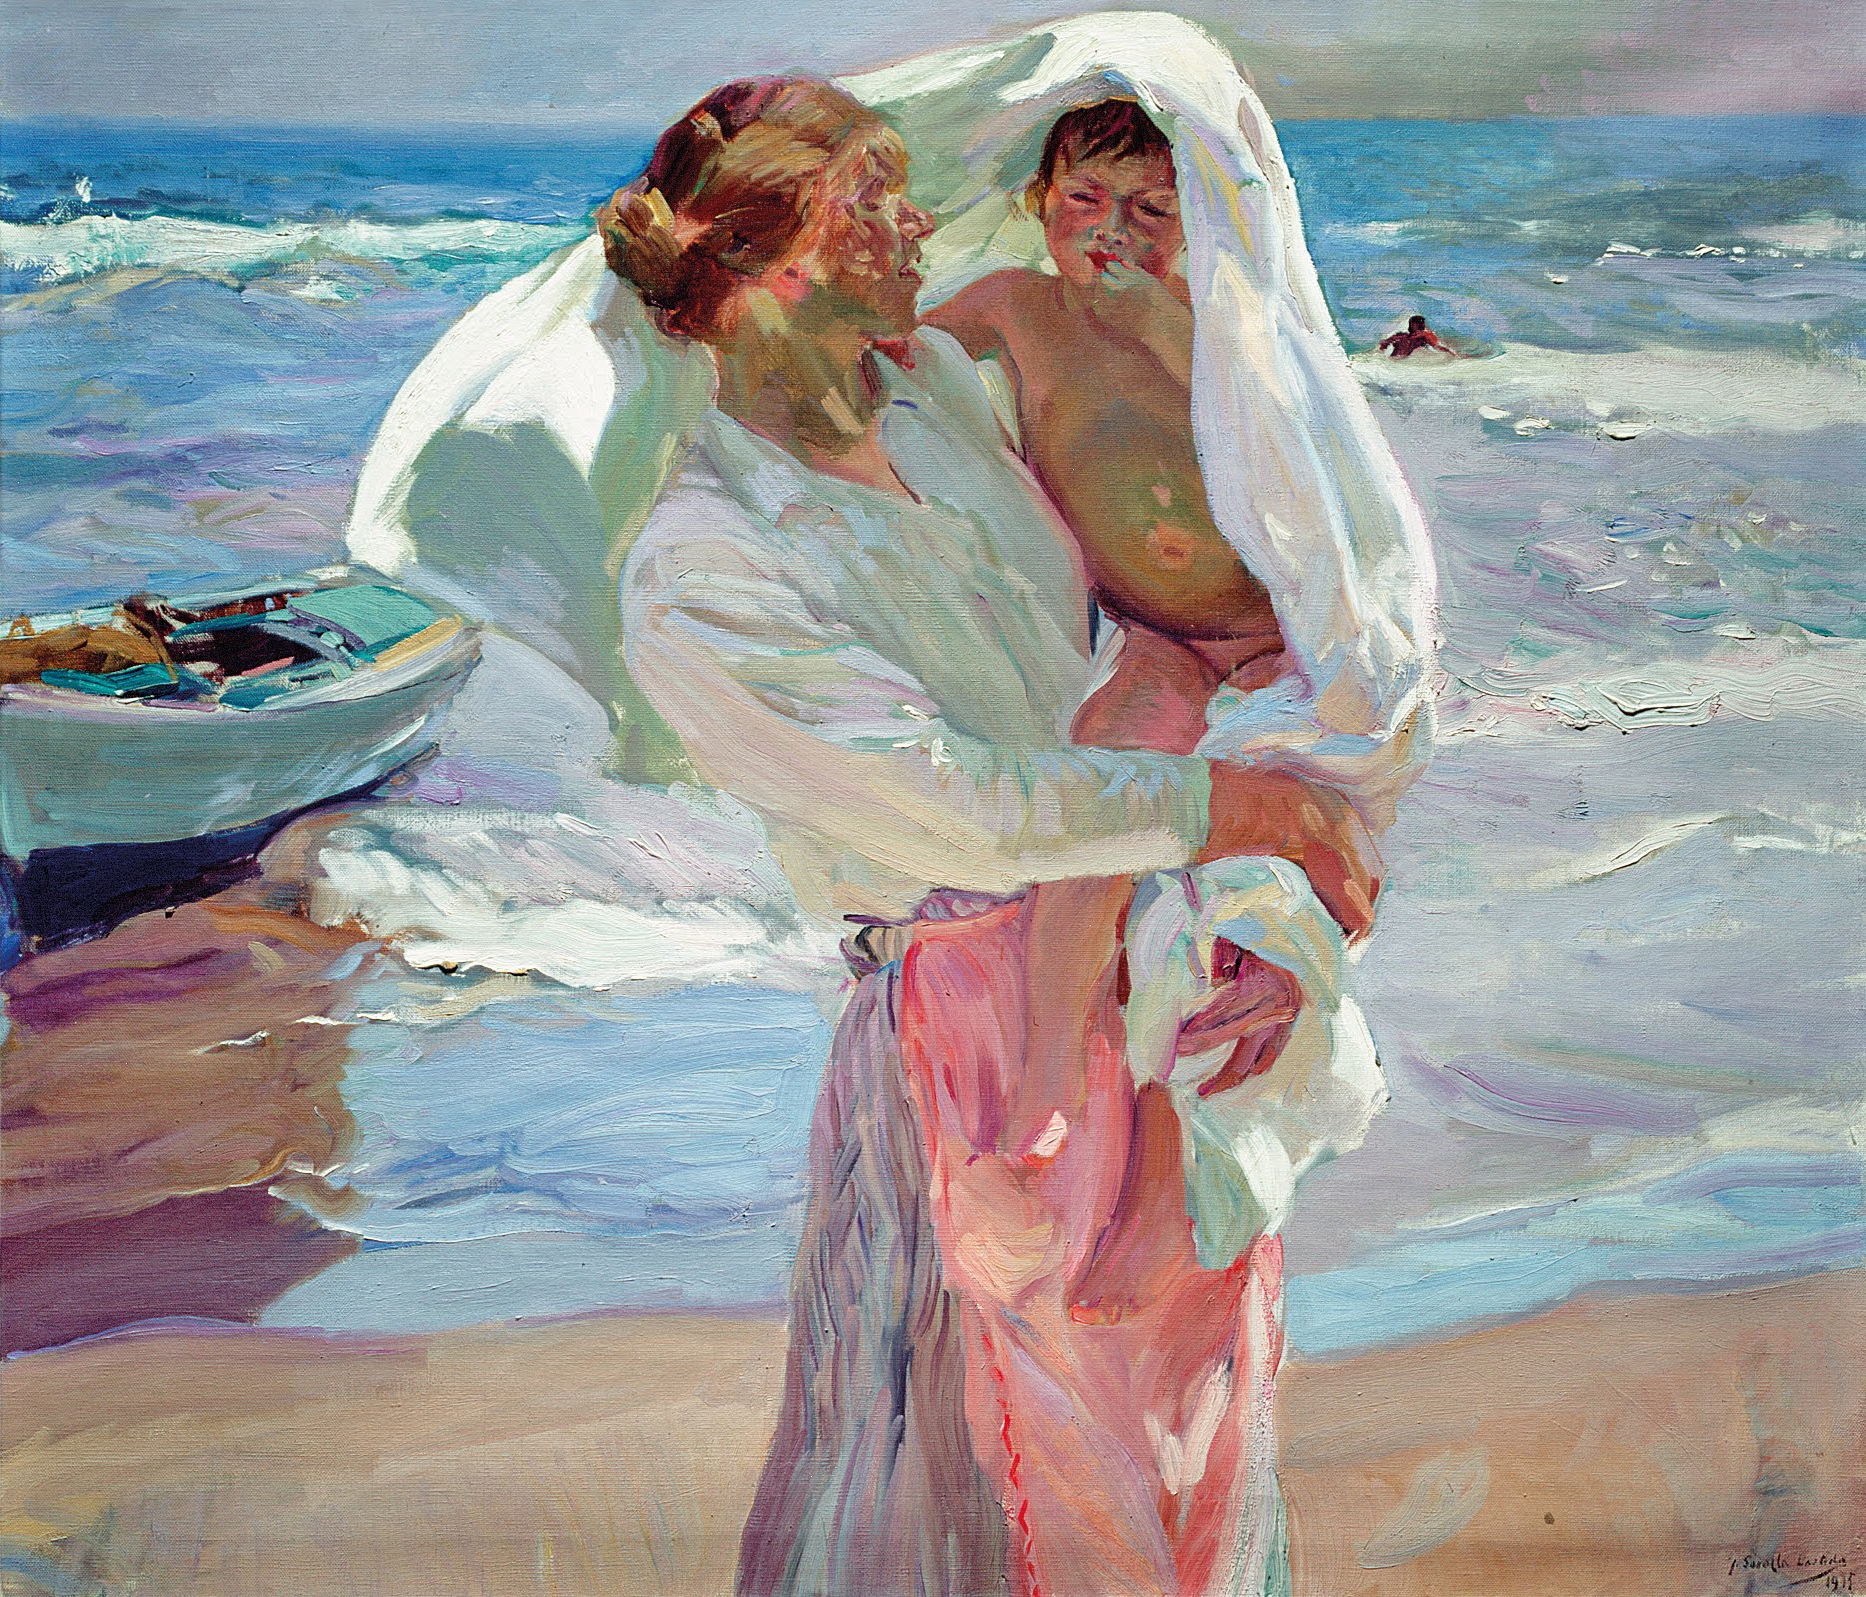 洗浴之後 by Joaquín Sorolla - 1915 - 130 x 150.5 cm 